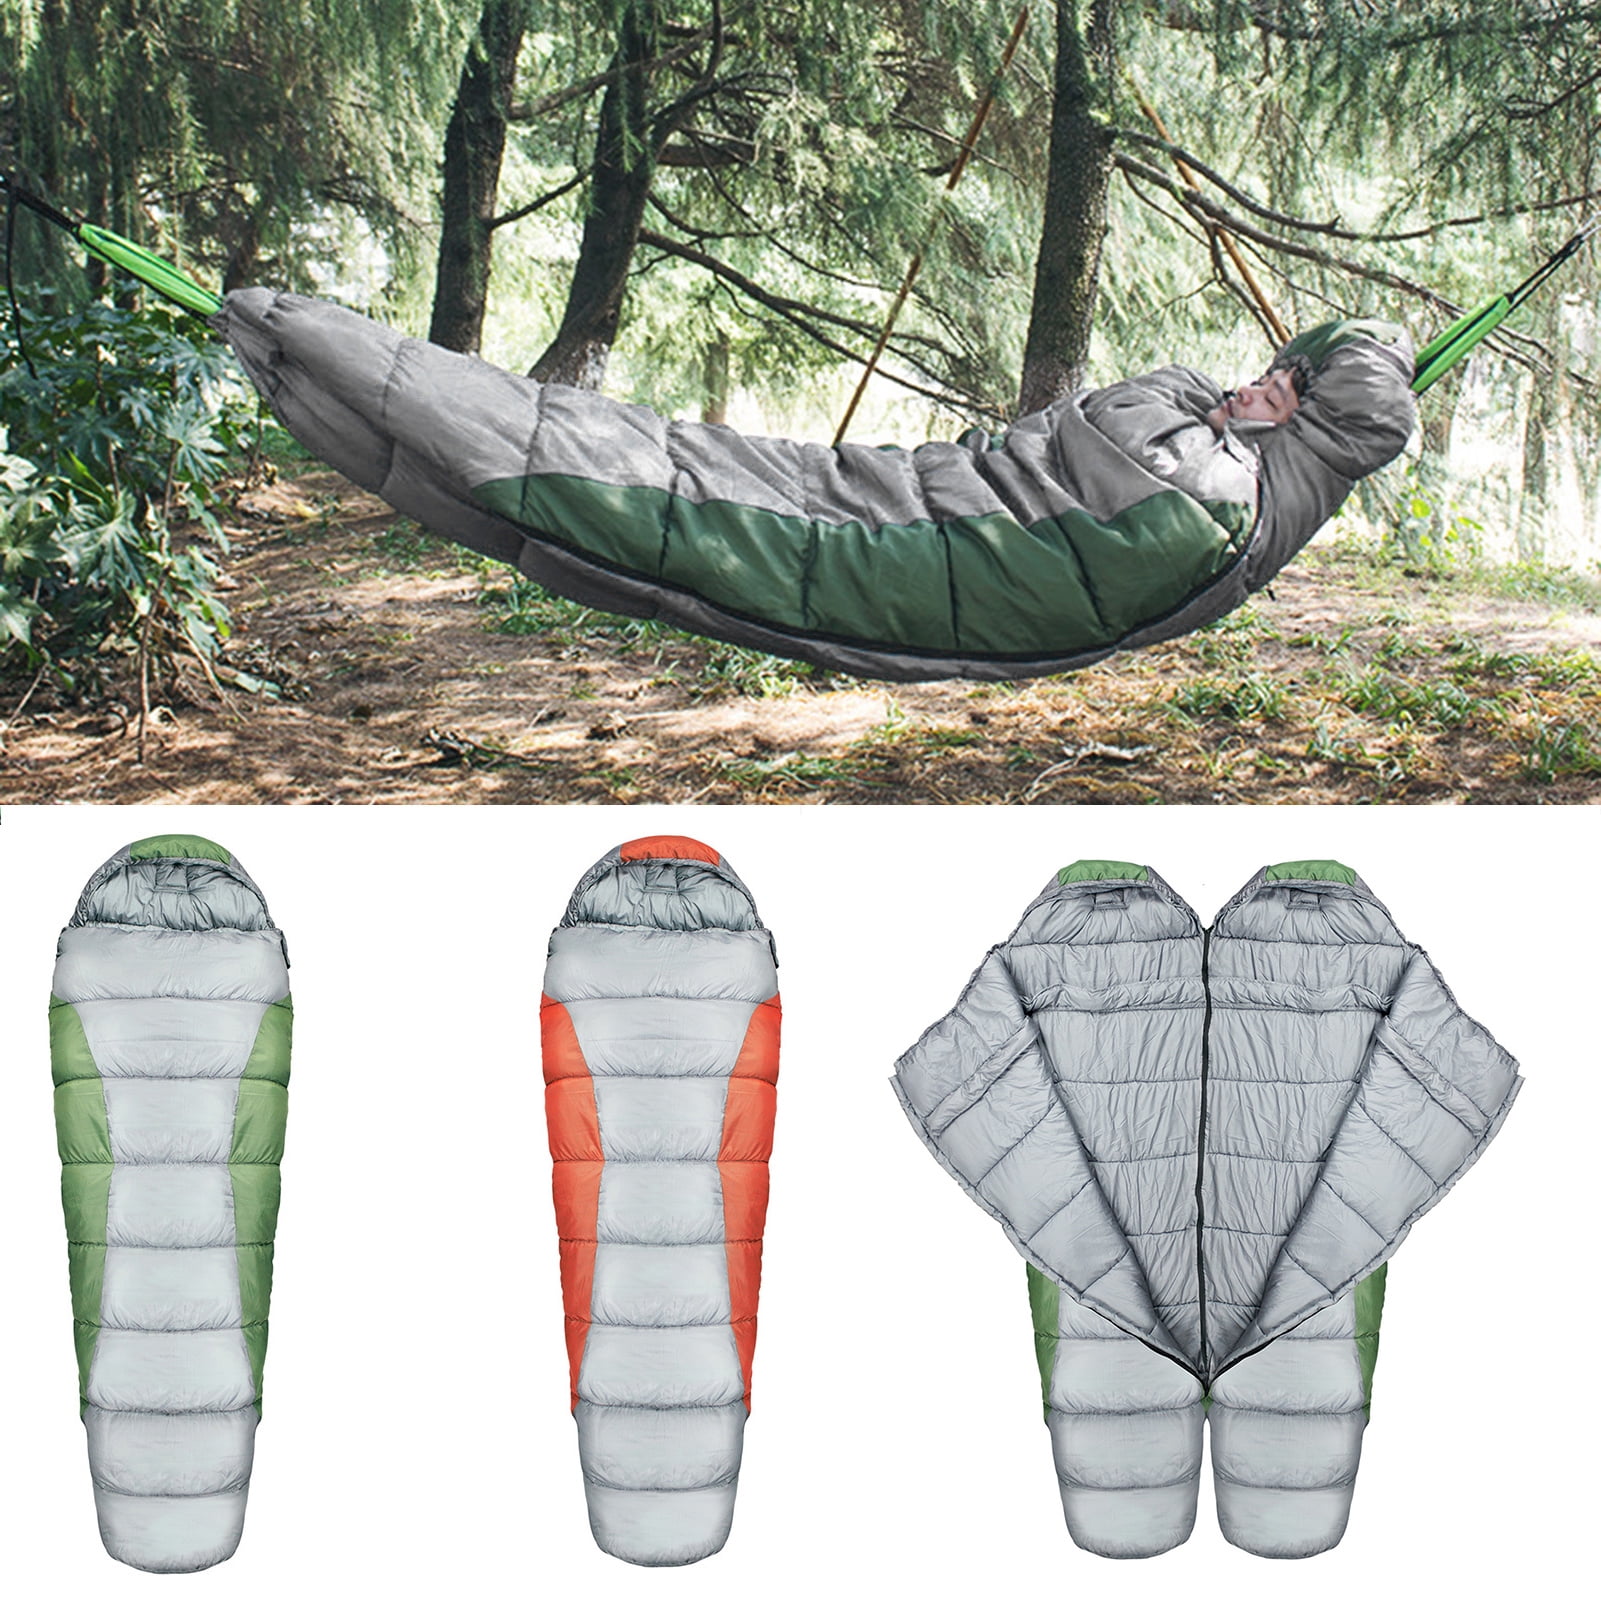 Ultralight Packable Sleeping Bag Liner Hammock Camping Hiking Sleeping Bag 